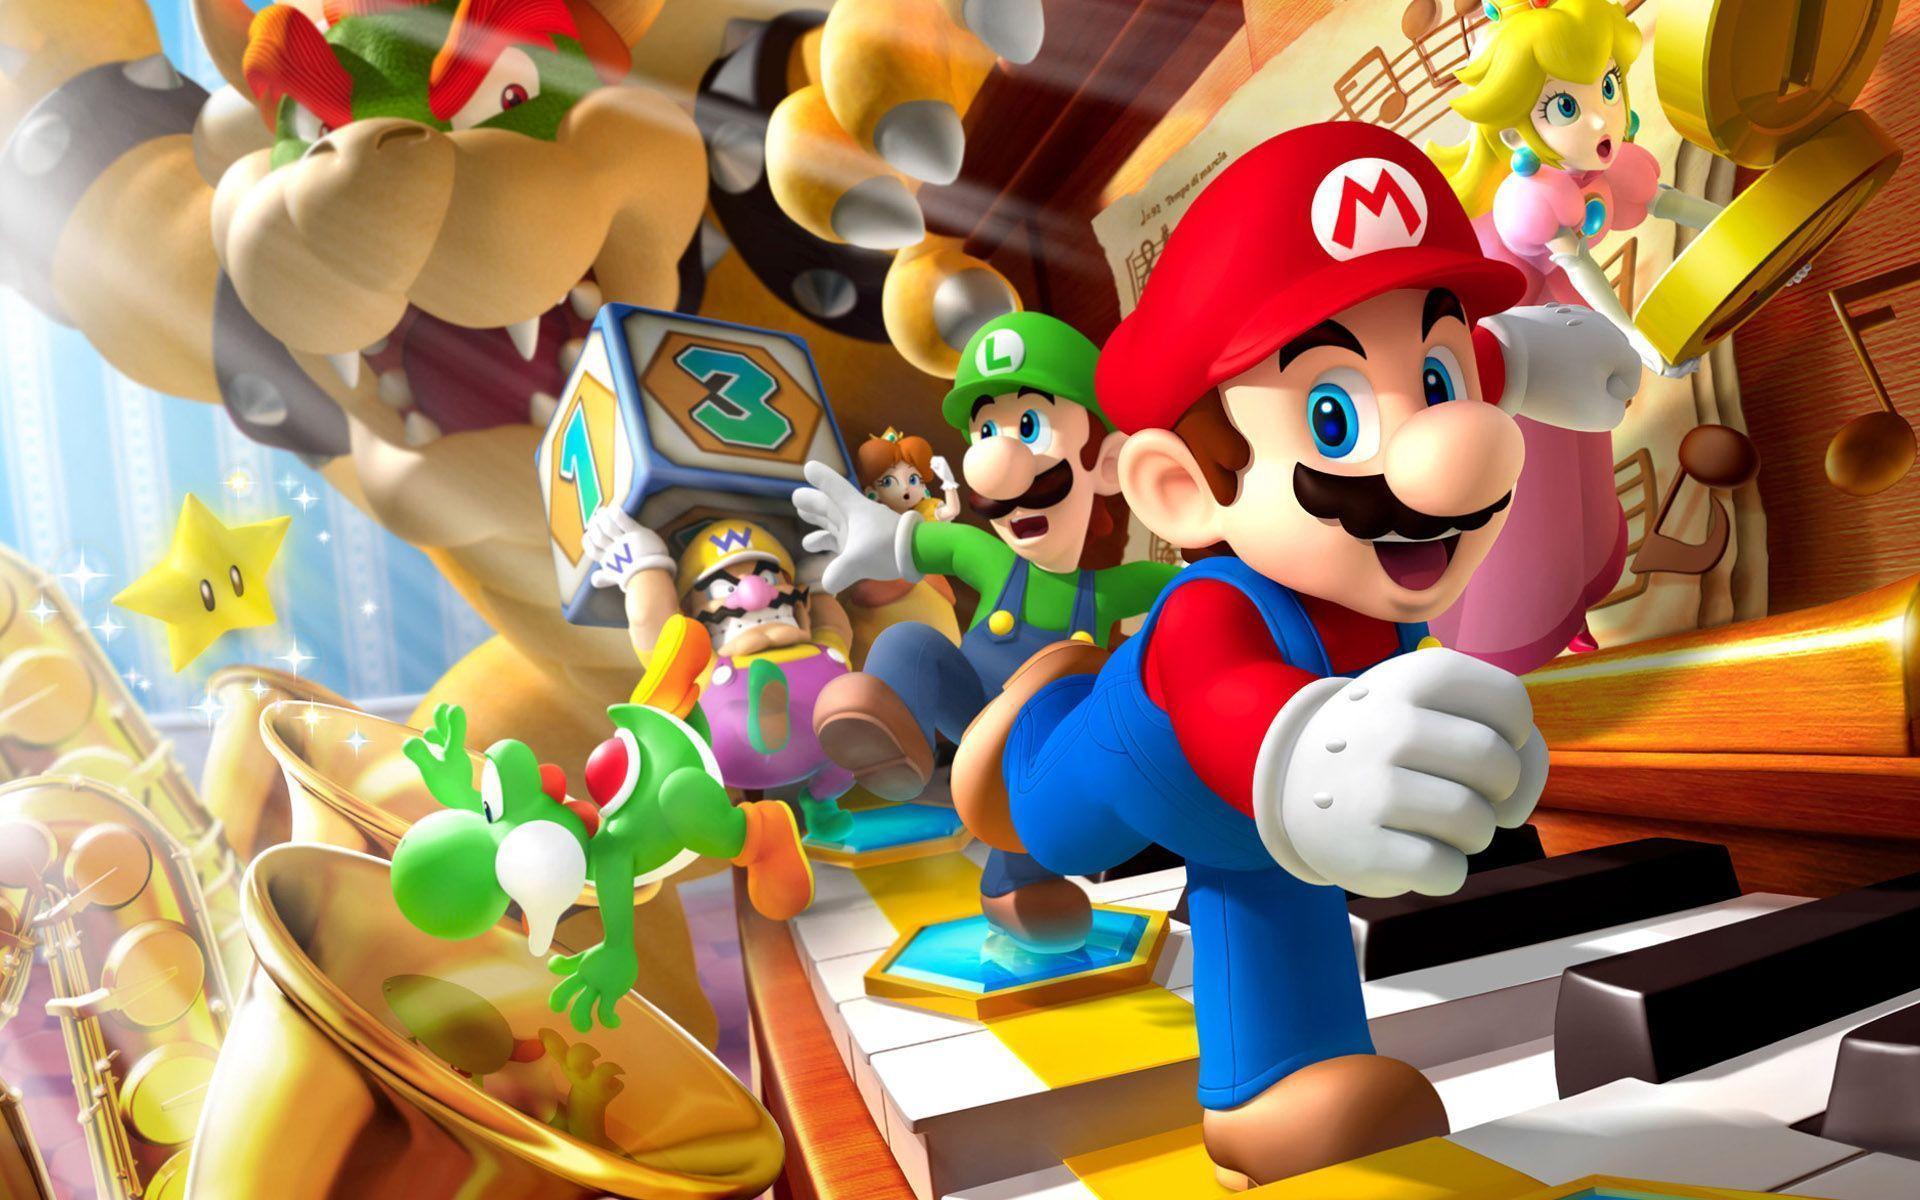 Hình nền  hình minh họa Anime hoạt hình Super Mario Nintendo Wii U  chơi Ảnh chụp màn hình 1920x1080  wallpaperUp  579275  Hình nền đẹp hd   WallHere